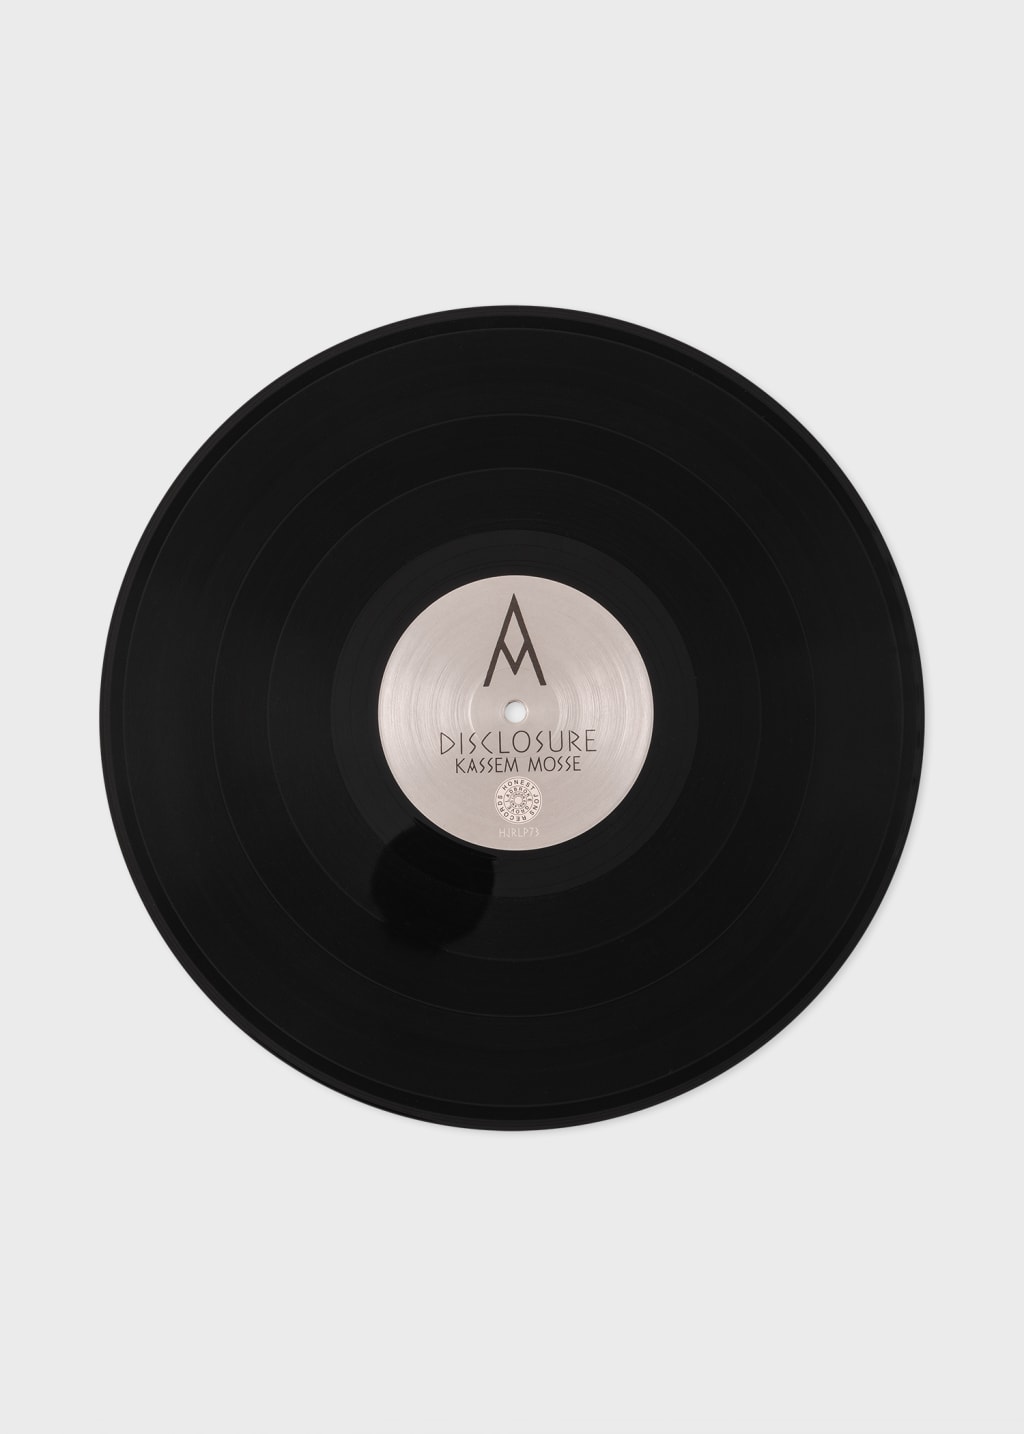 Product View - Kassem Mosse - 'Disclosure' Vinyl 2 x LP